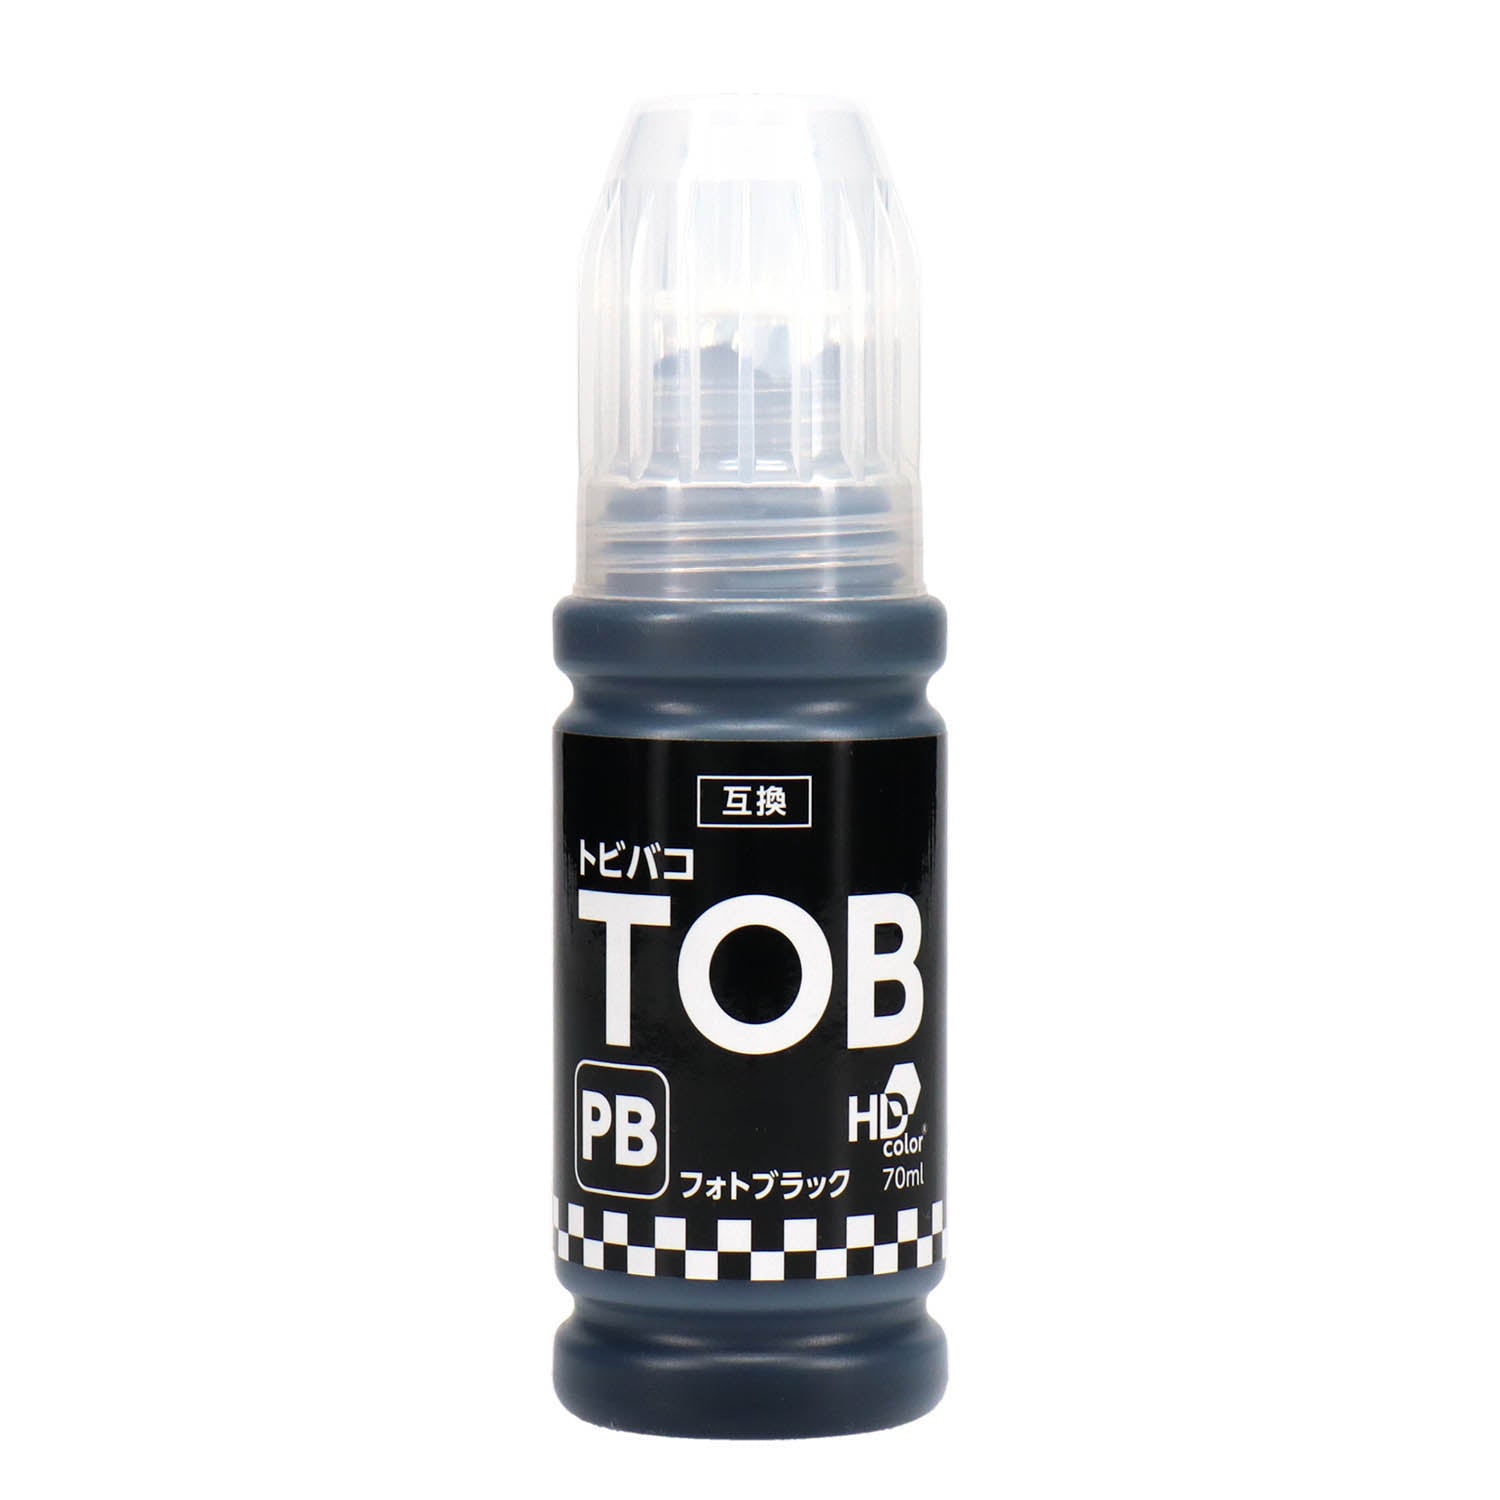 エプソン用 TOB-PB (トビバコ)  互換インクボトル フォトブラック